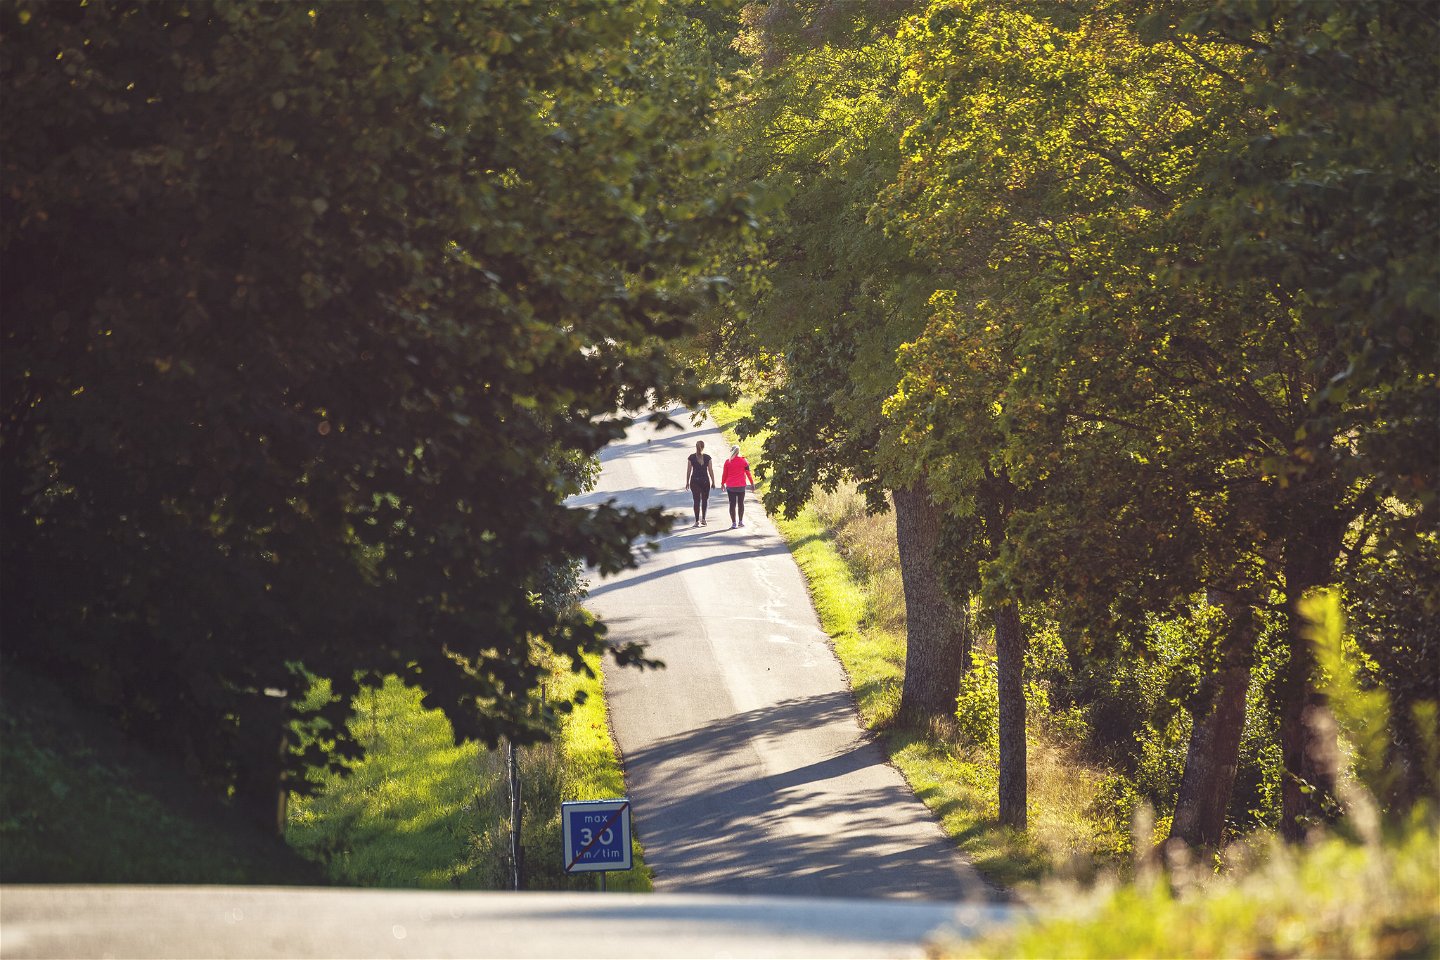 Två personer vandrar på asfalt i en grönskande miljö